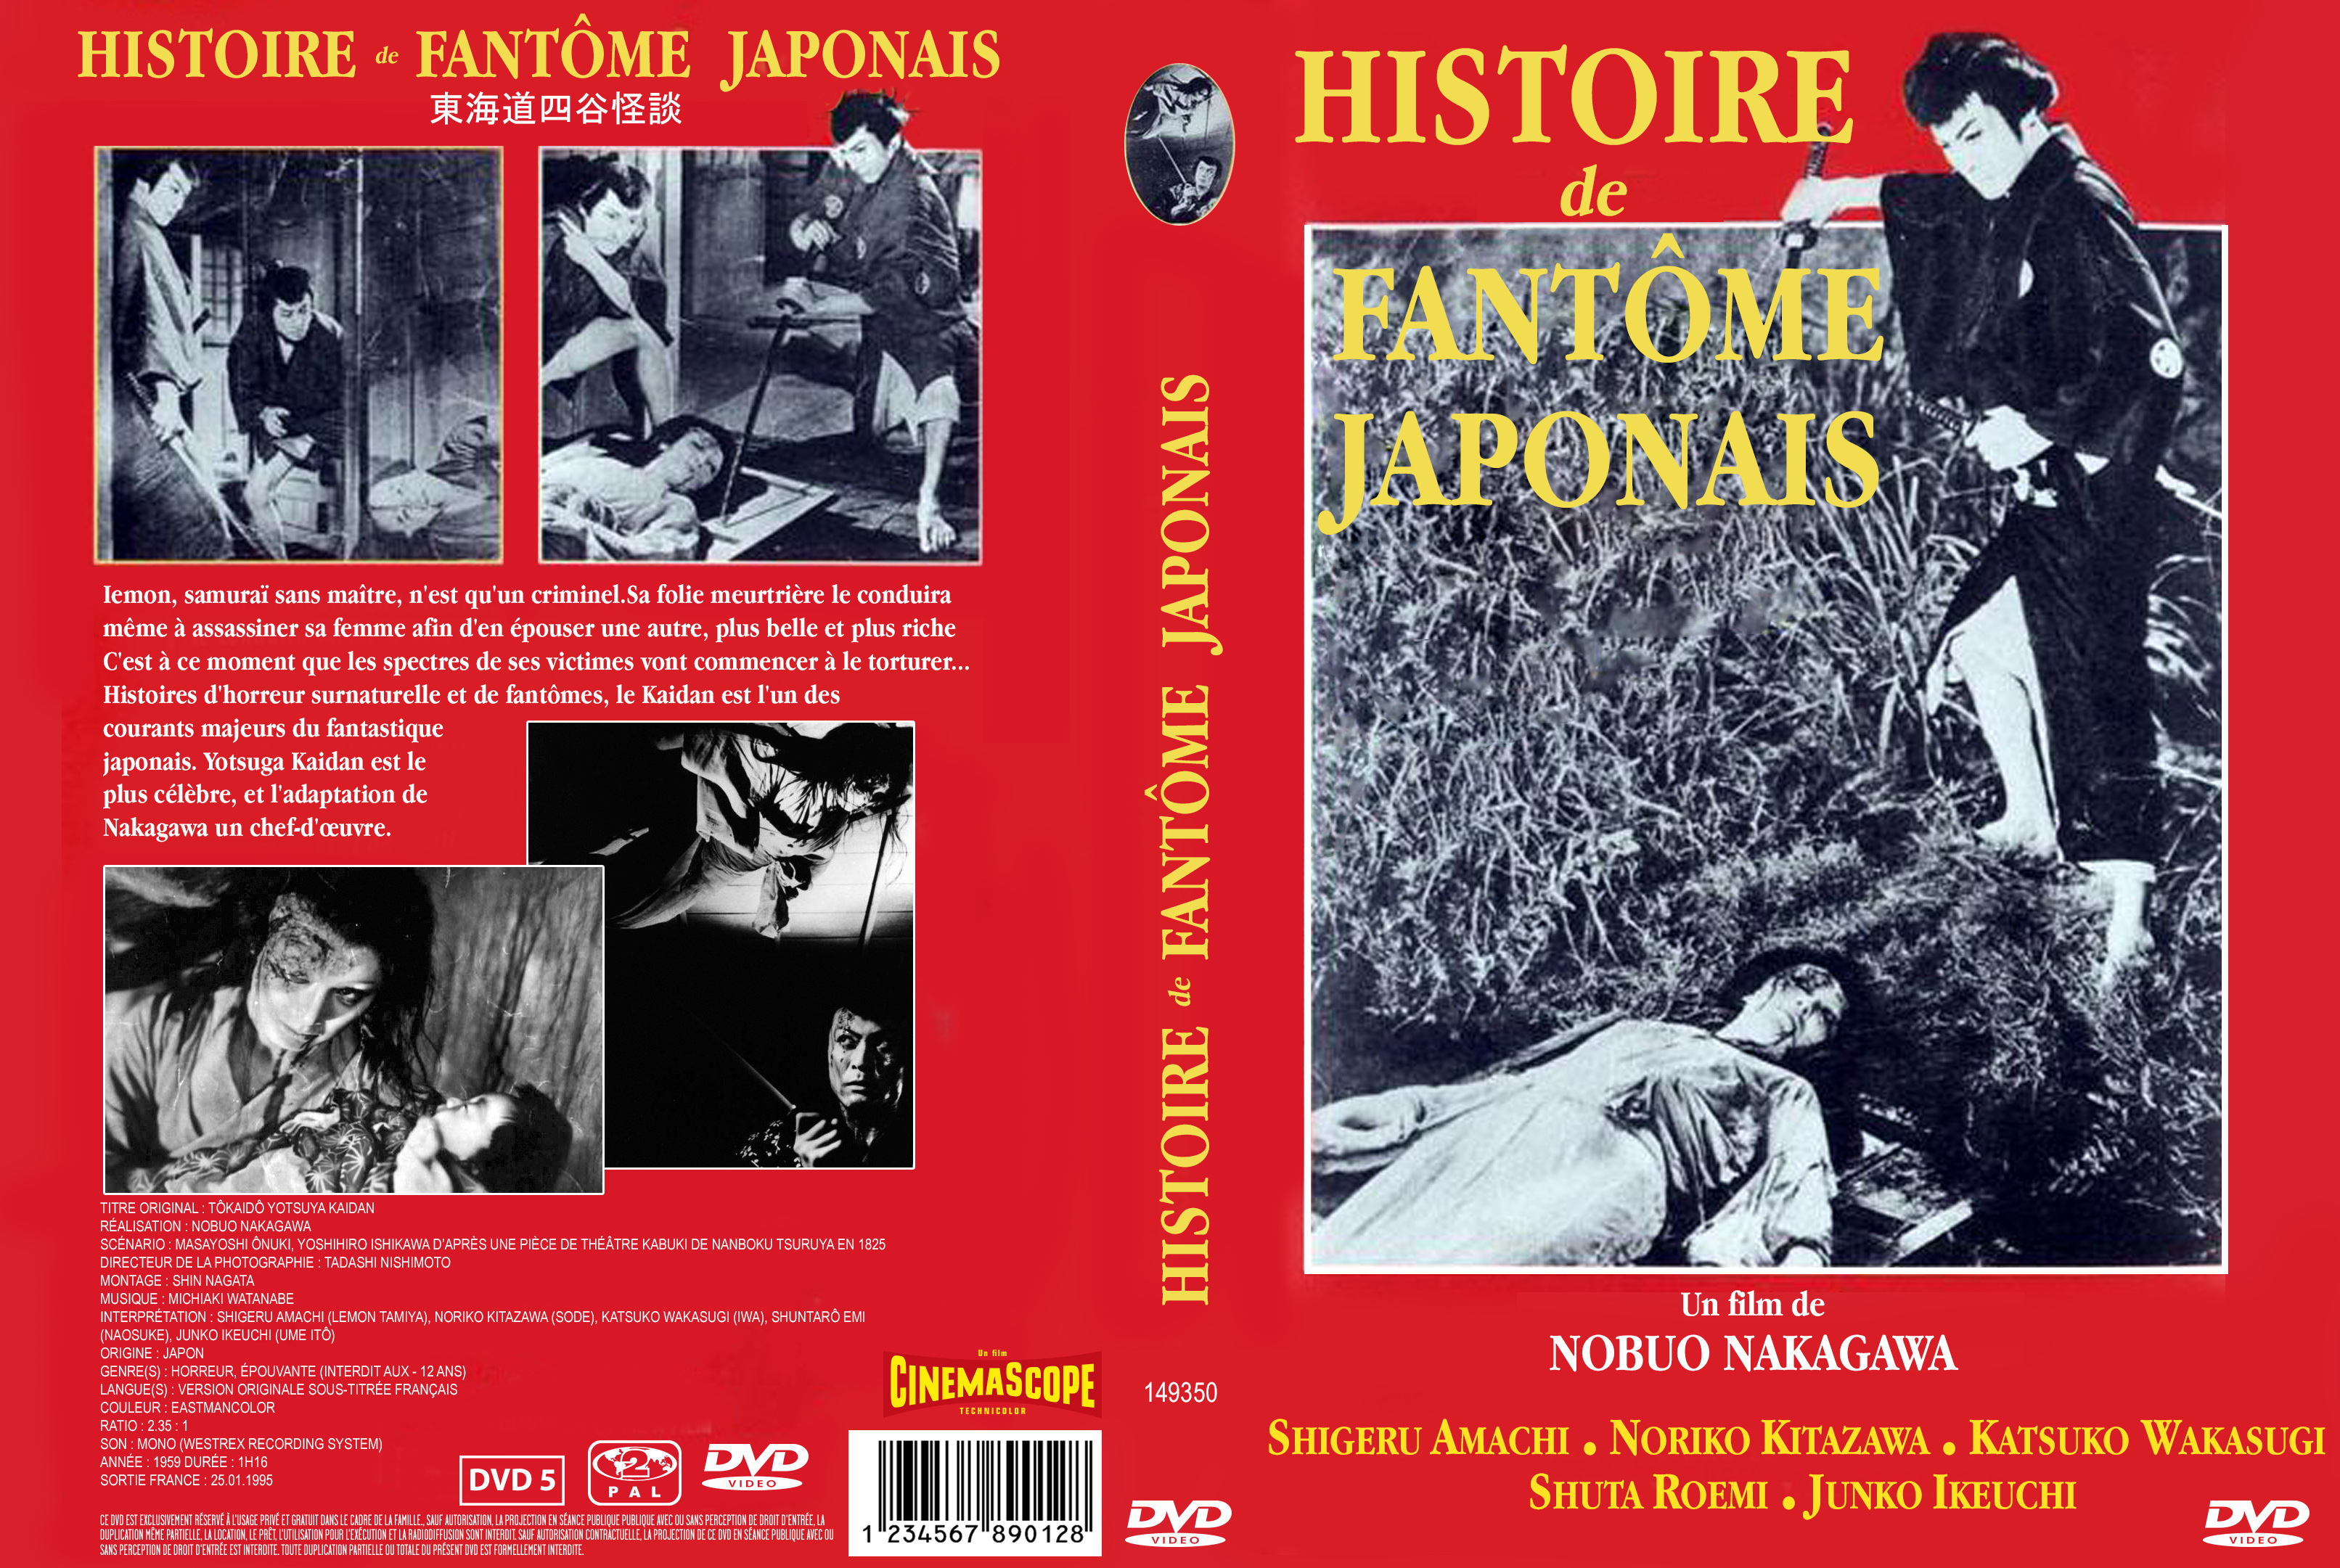 Jaquette DVD Histoire de fantome japonais custom